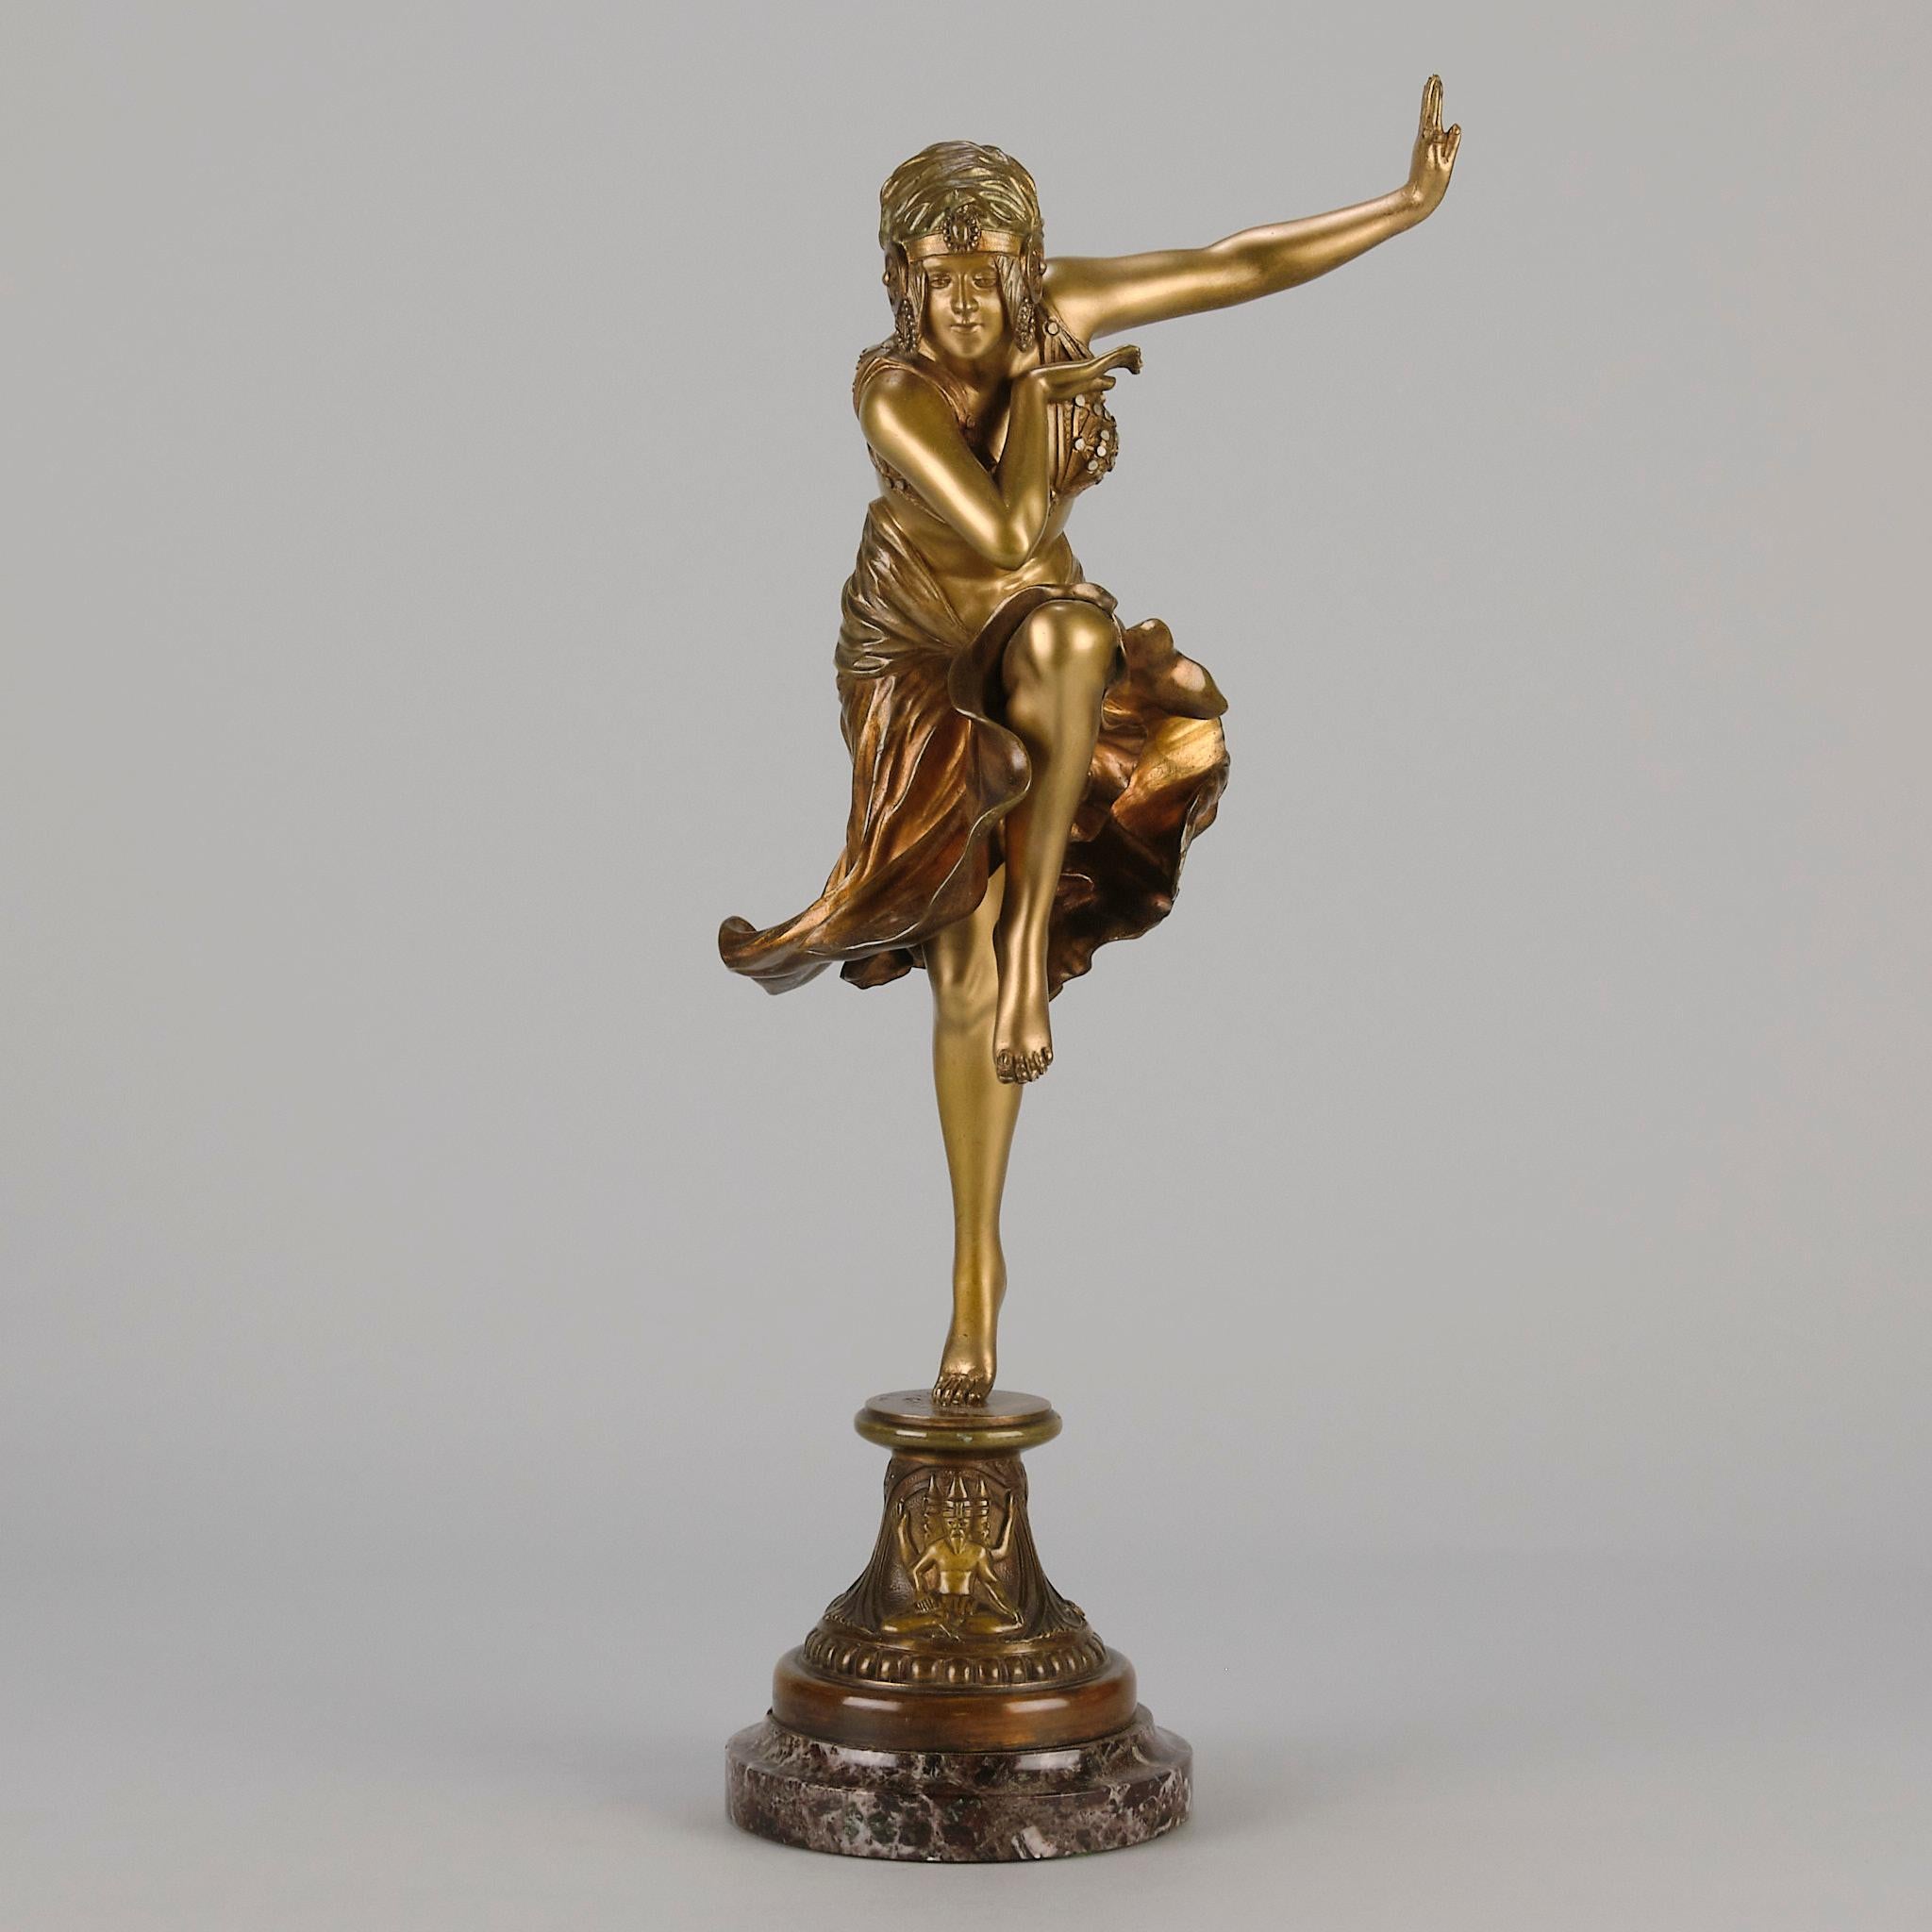 Figure en bronze doré et émaillé Art Déco du début du 20e siècle représentant une belle danseuse élégante dans une pose stylisée, portant un costume et une coiffe attrayants, avec de superbes détails de surface et de couleur, reposant sur une base